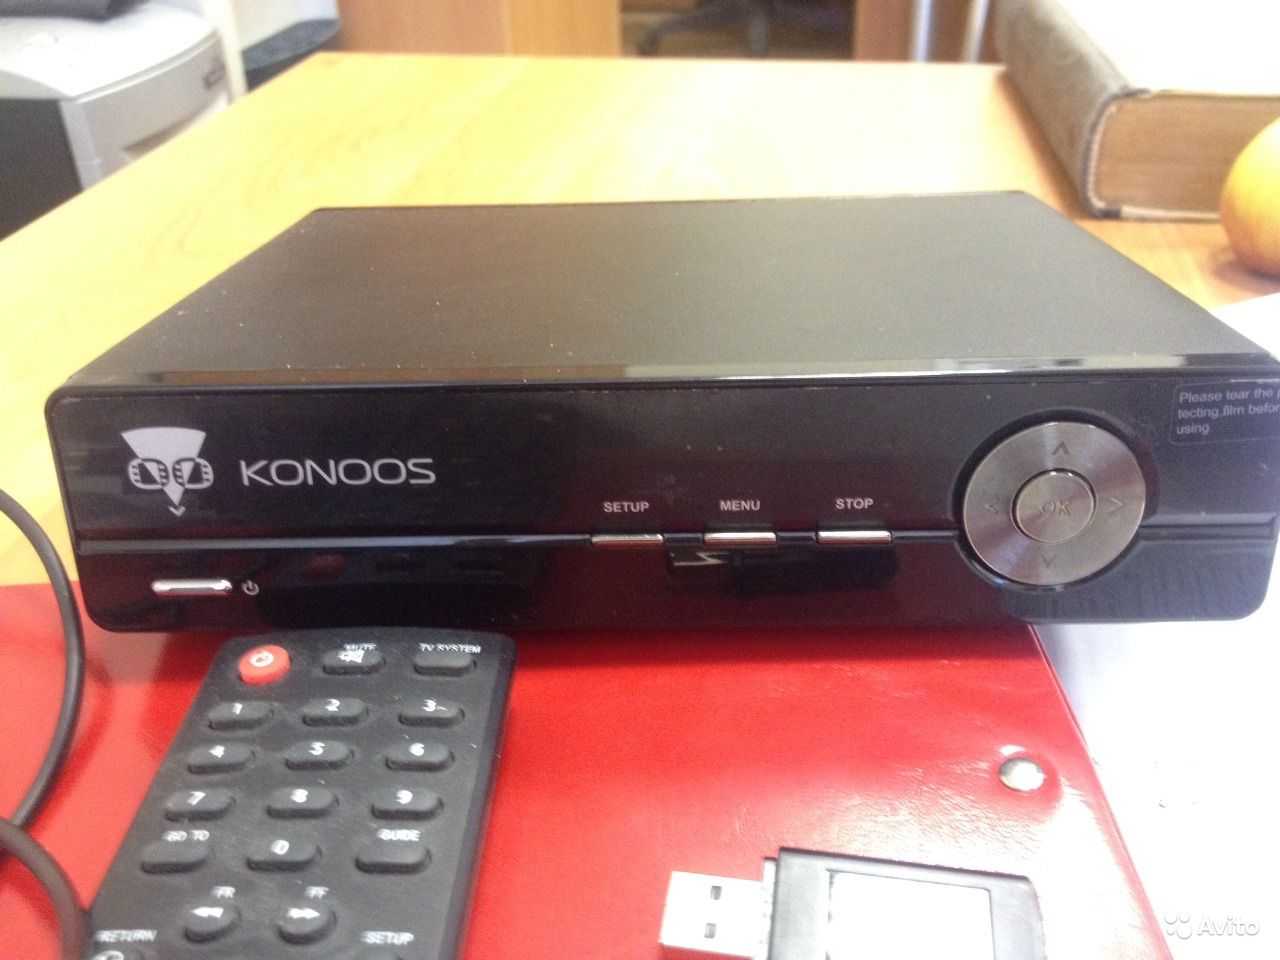 Konoos gv-4000 купить по акционной цене , отзывы и обзоры.